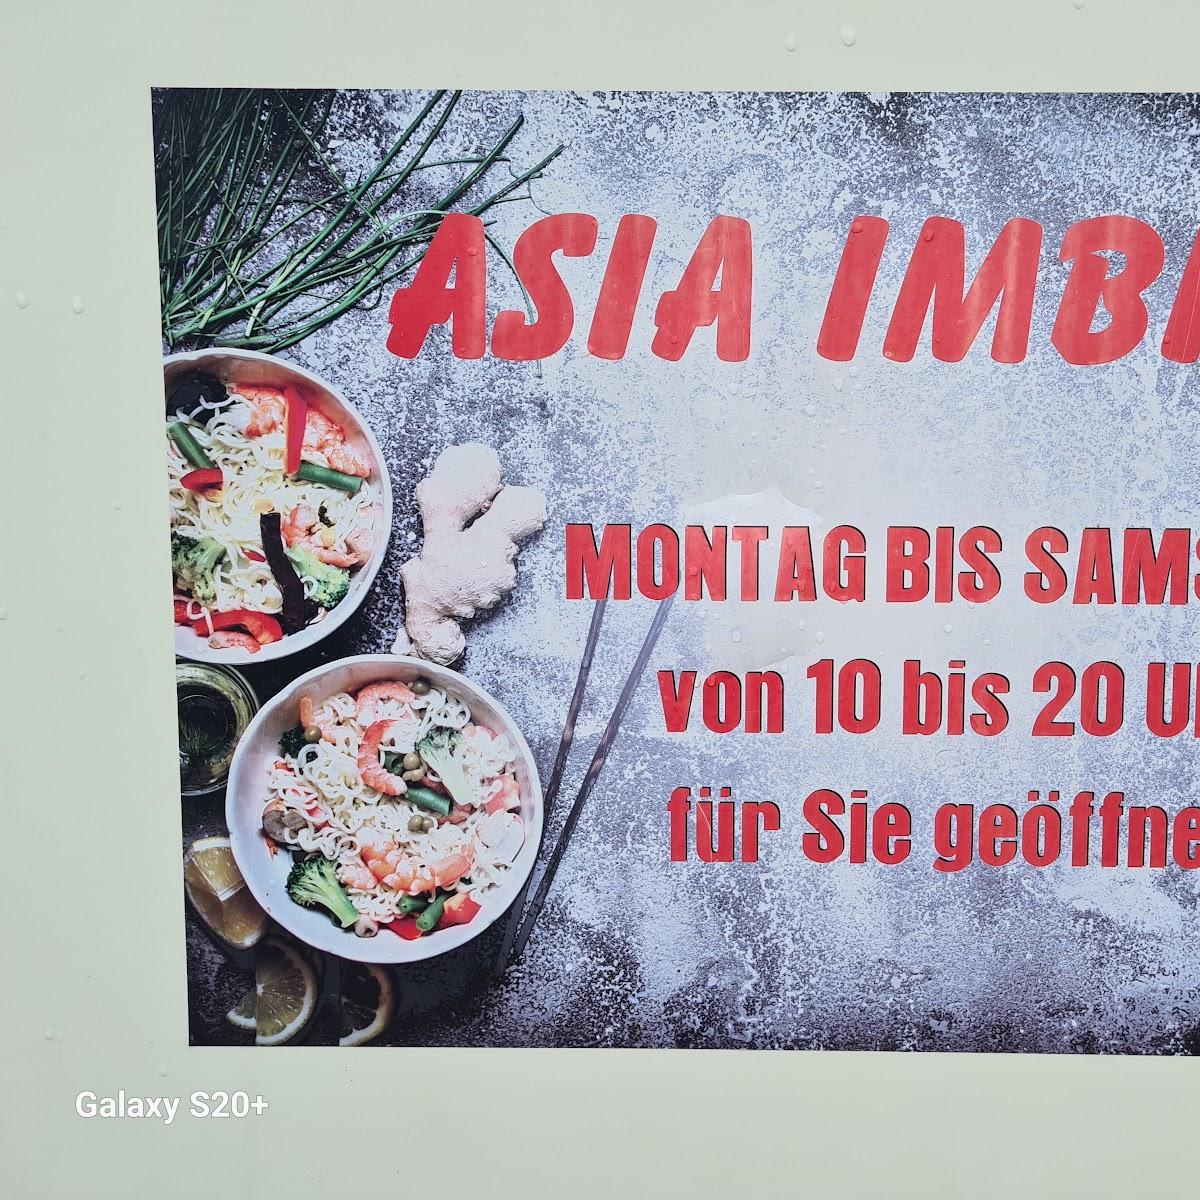 Restaurant "ASIA-Imbiss" in Visselhövede